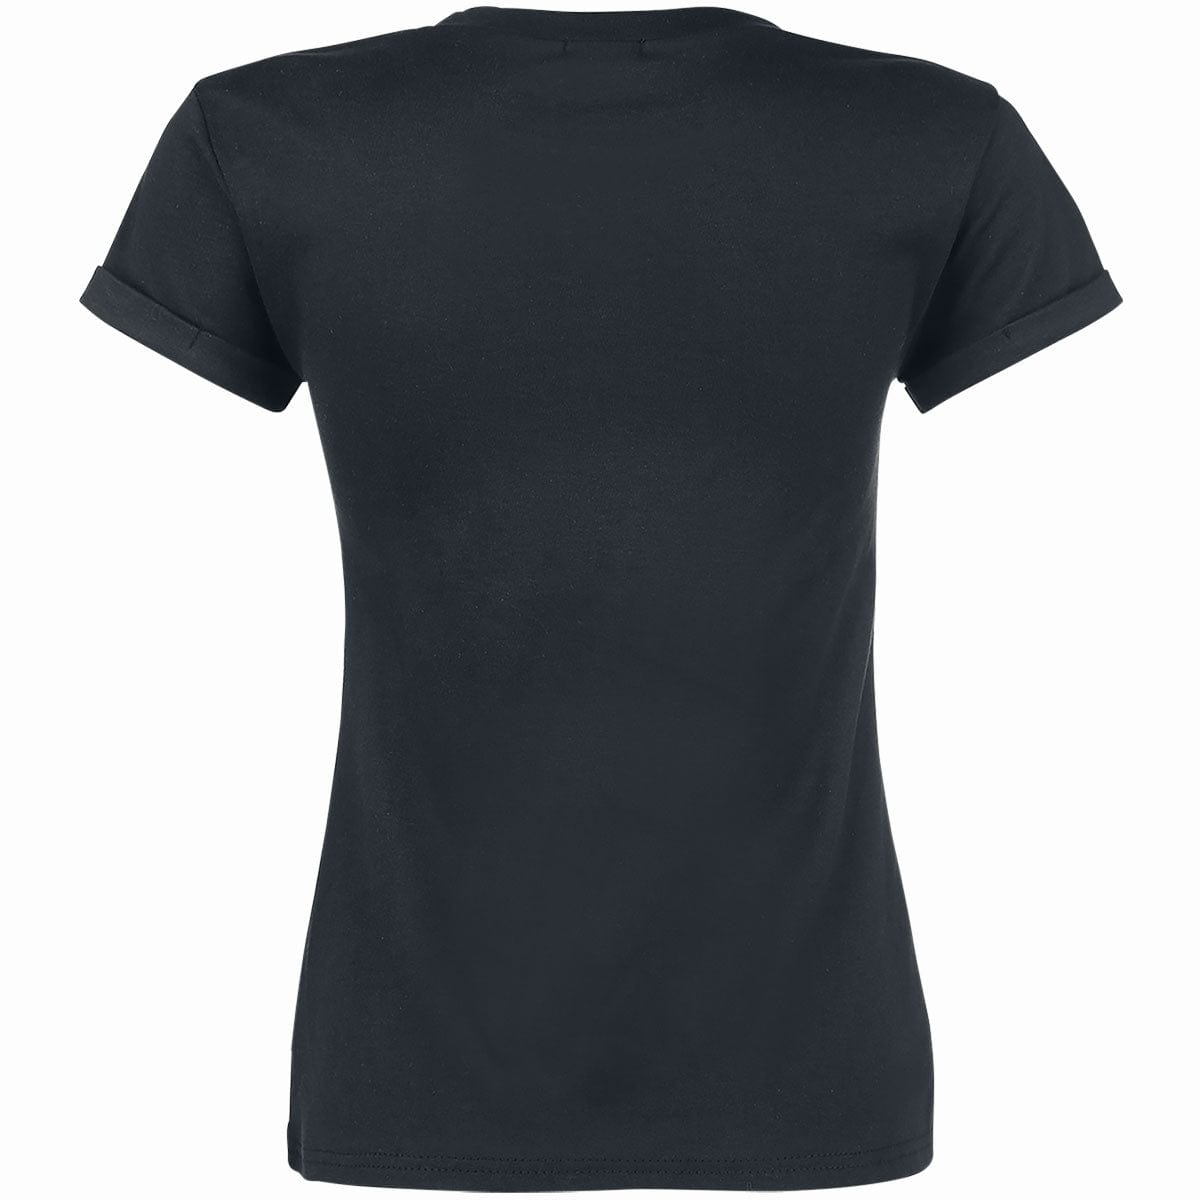 INFERNAL UNICORN - Girls Boatneck Cap Sleeve T-Shirt - Spiral USA